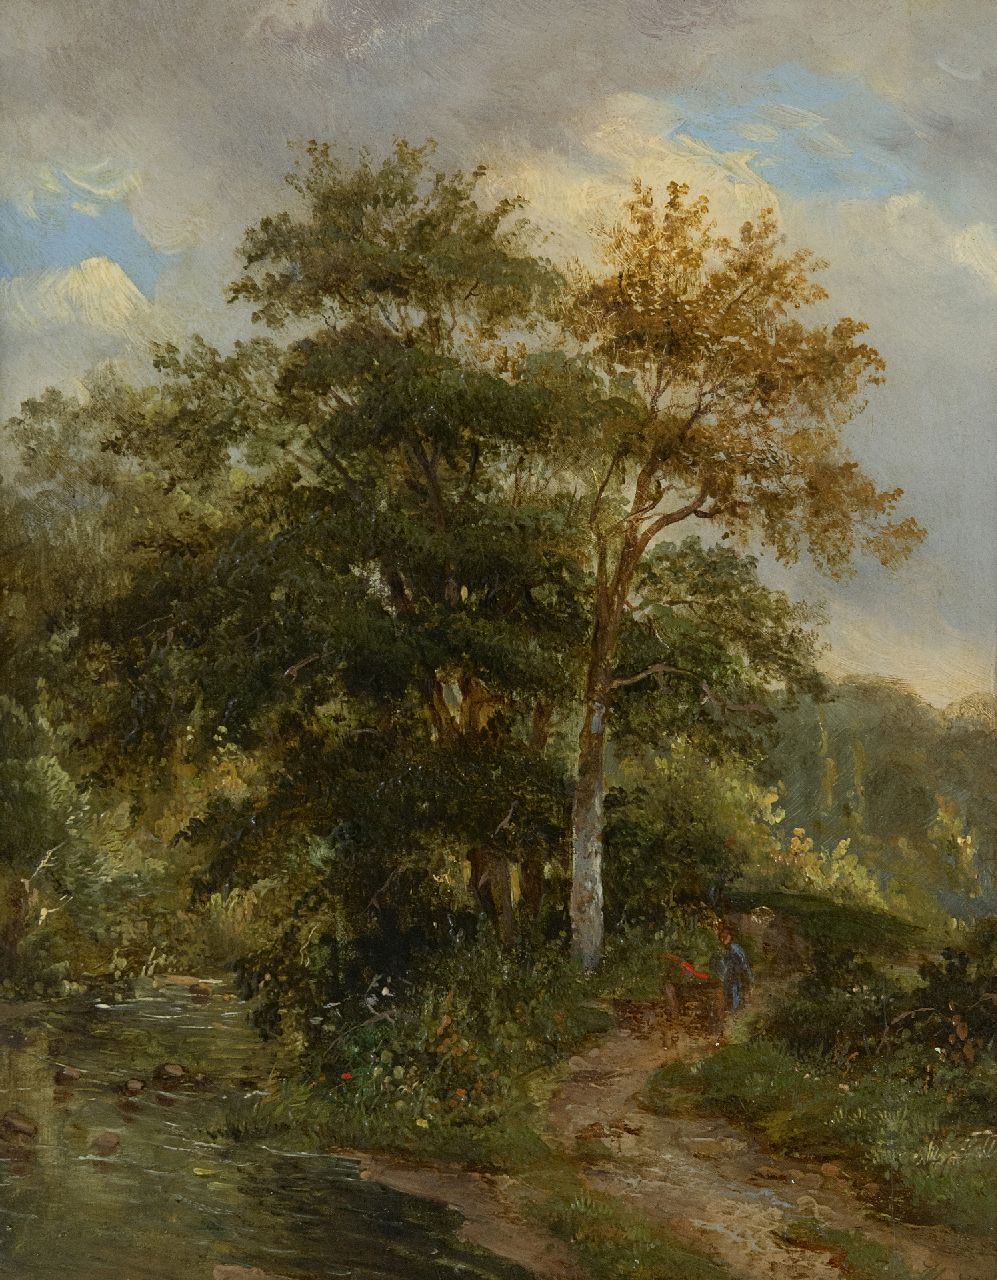 Christ P.C.  | Pieter Caspar Christ | Schilderijen te koop aangeboden | De bosbeek, olieverf op paneel 23,7 x 18,9 cm